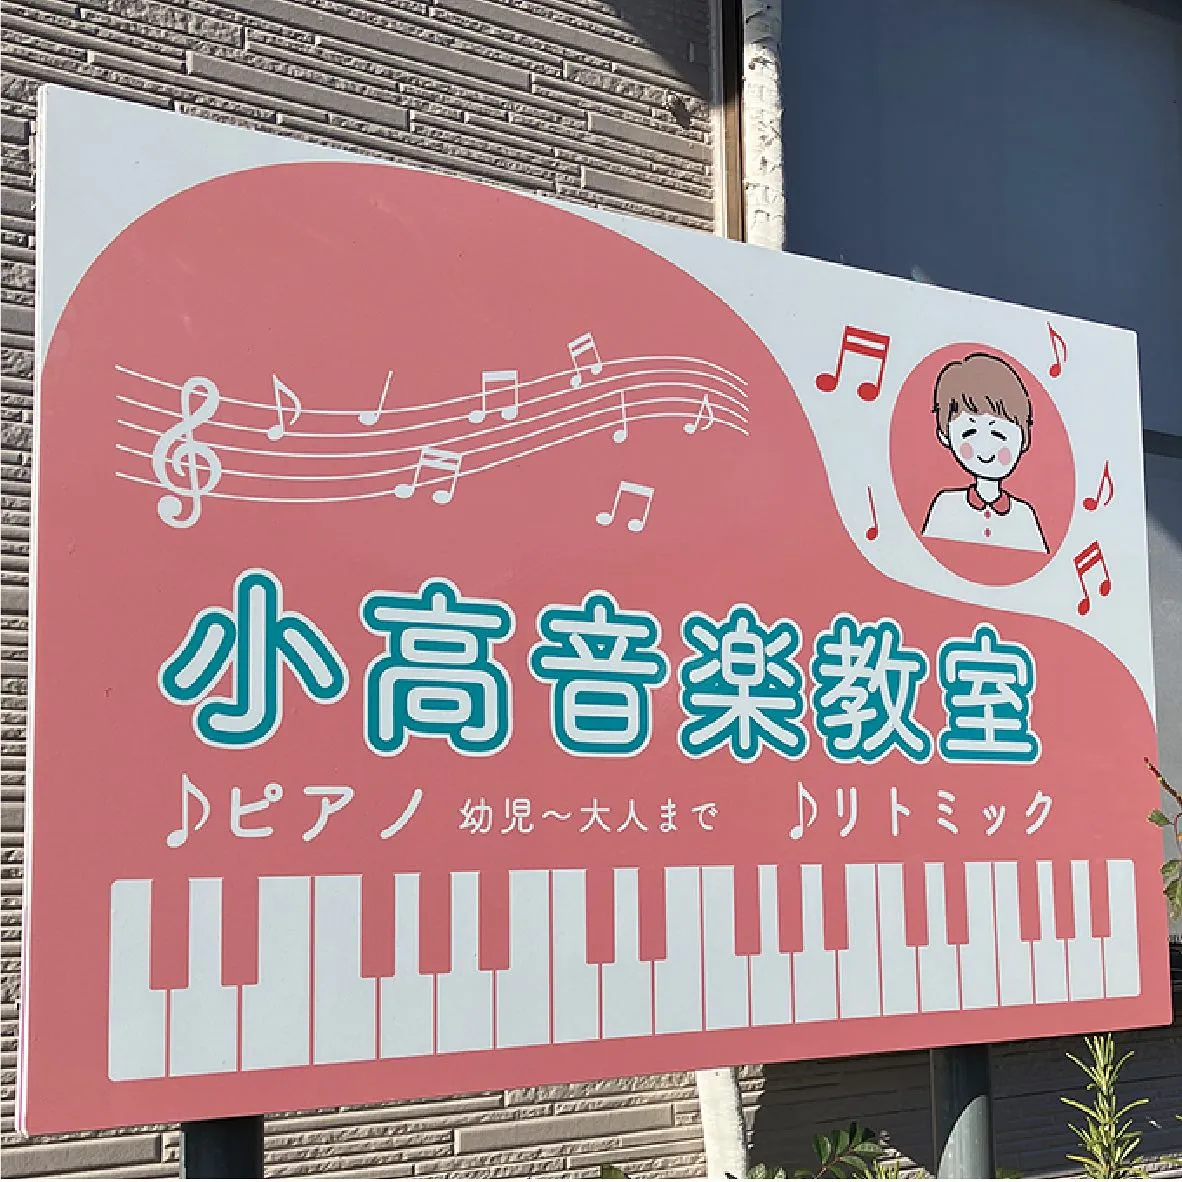 大多喜町にある小高音楽教室様の看板の設置・デザインを行いまし...